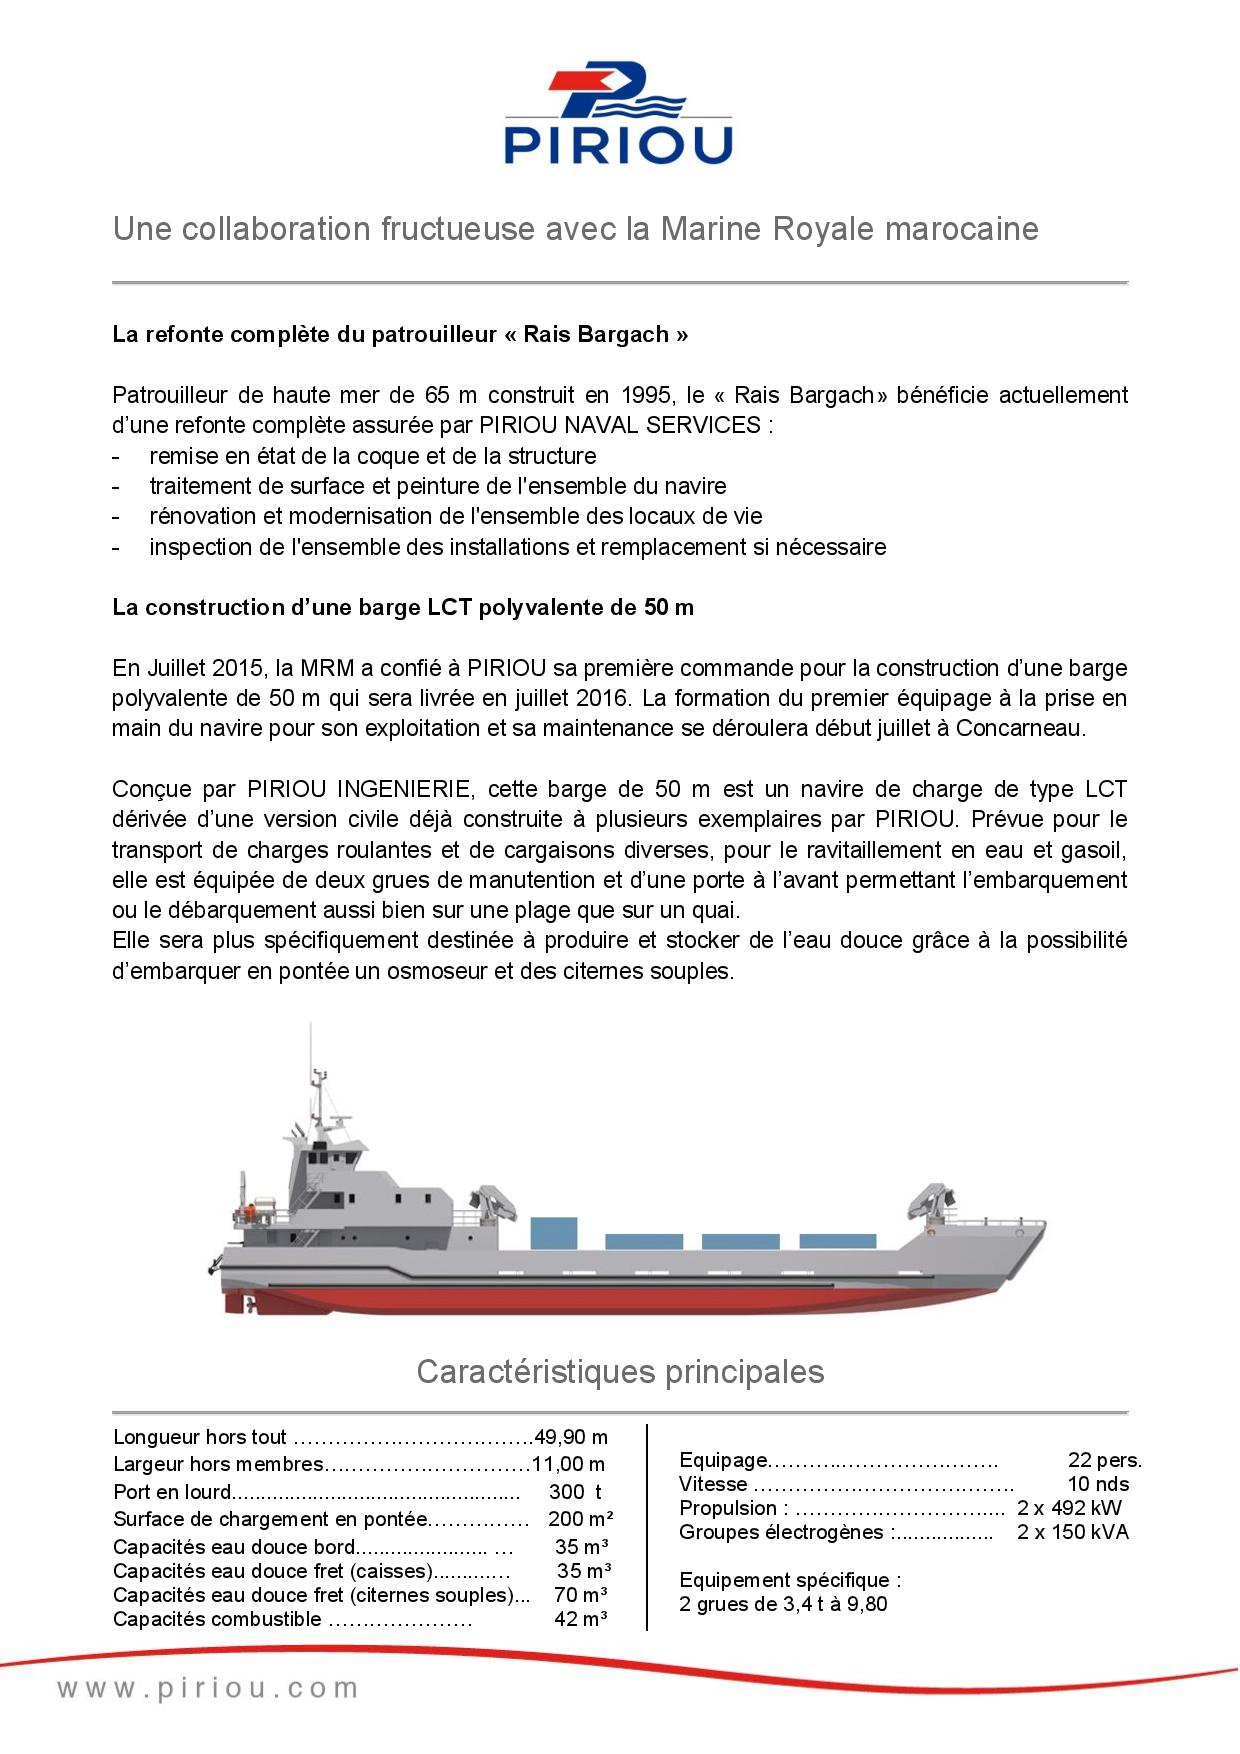 Royal Moroccan Navy Fleet Auxiliary / Unités Auxiliaires de la MRM - Page 4 PIRIOU____Communiqu___de_Presse___Commande_BHO2M___Marine_Royale_Marocaine___23.06.16-page-004